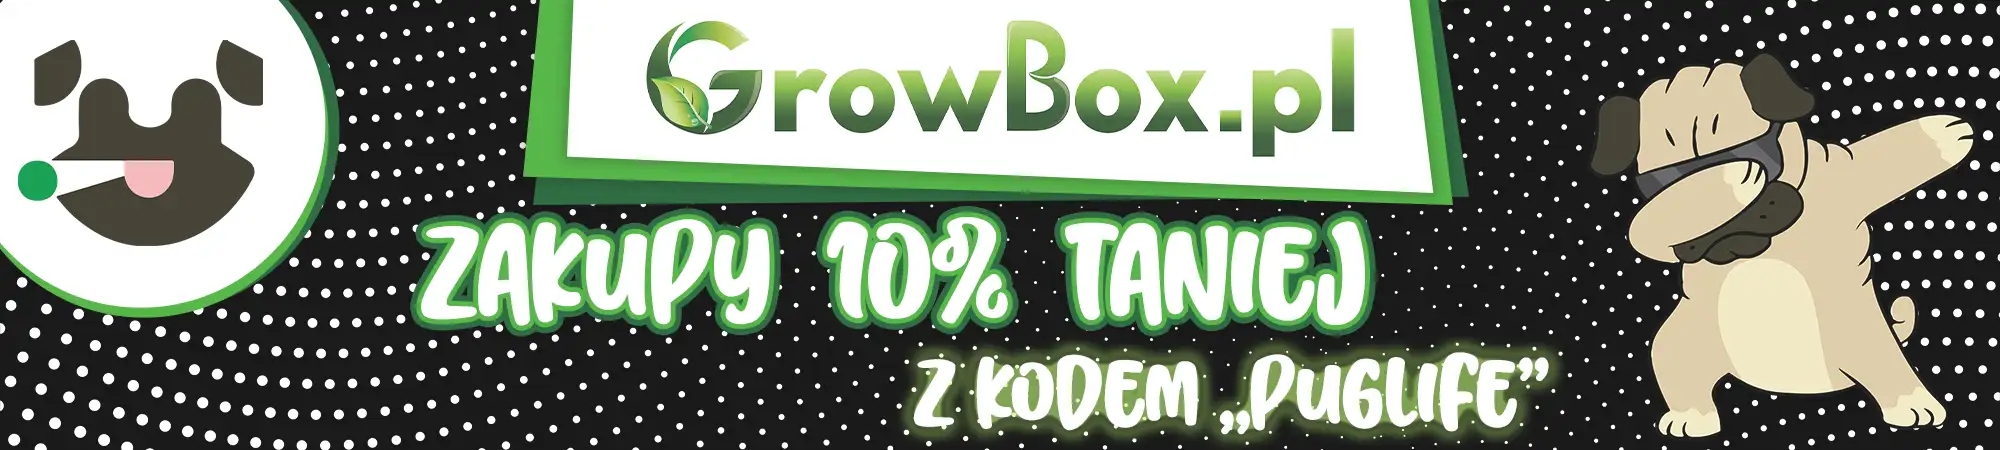 kod promocyjny do sklepu Growbox